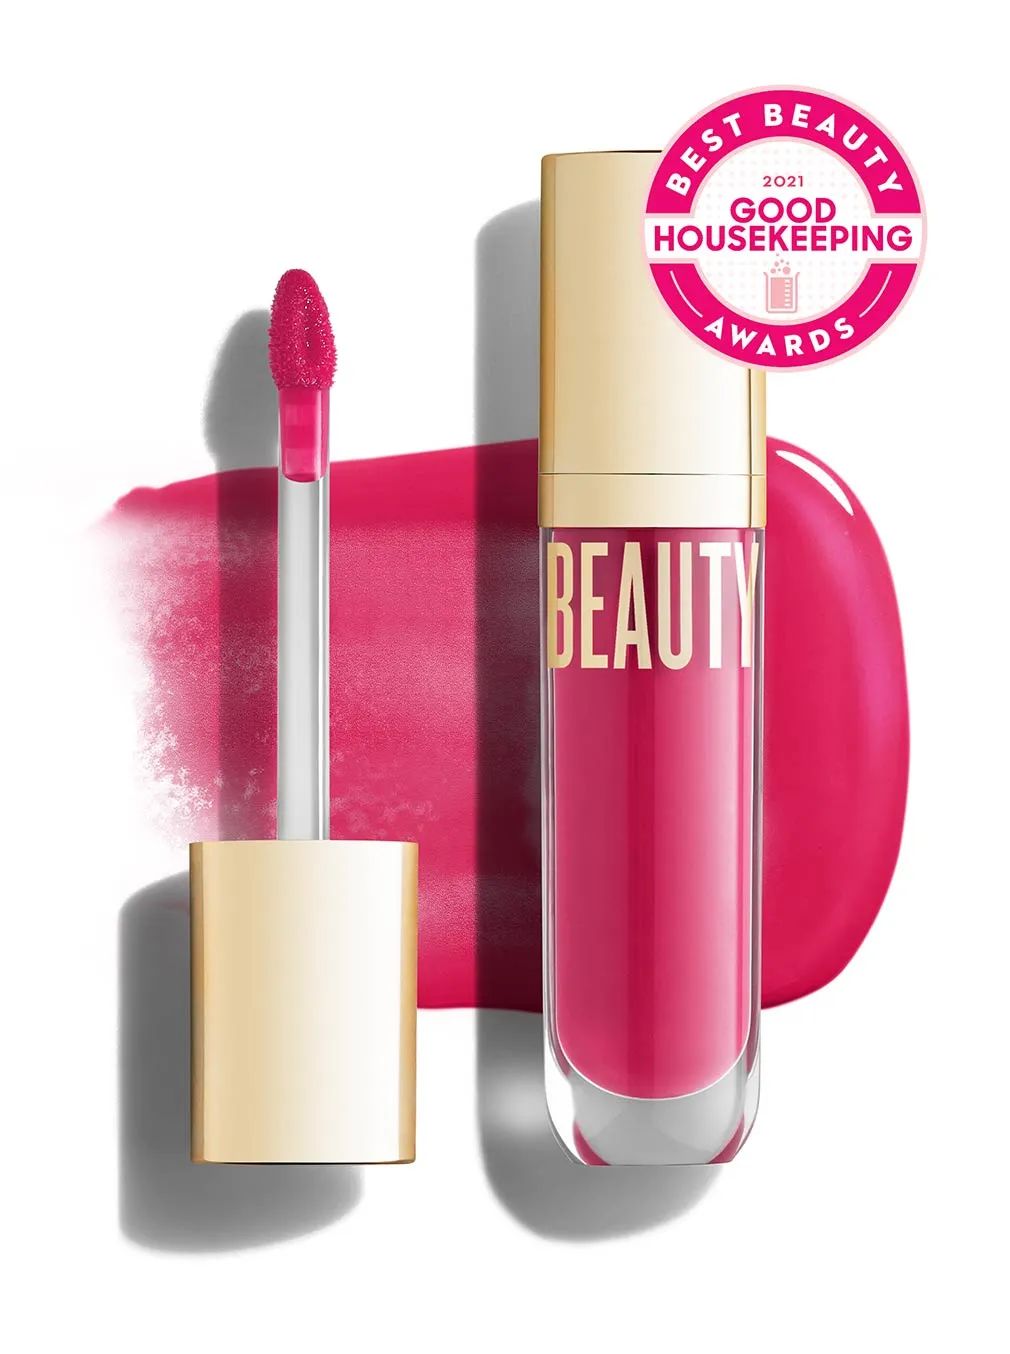 Beyond Gloss - Beautycounter - Skin Care, Makeup, Bath and Body and more! | Beautycounter.com